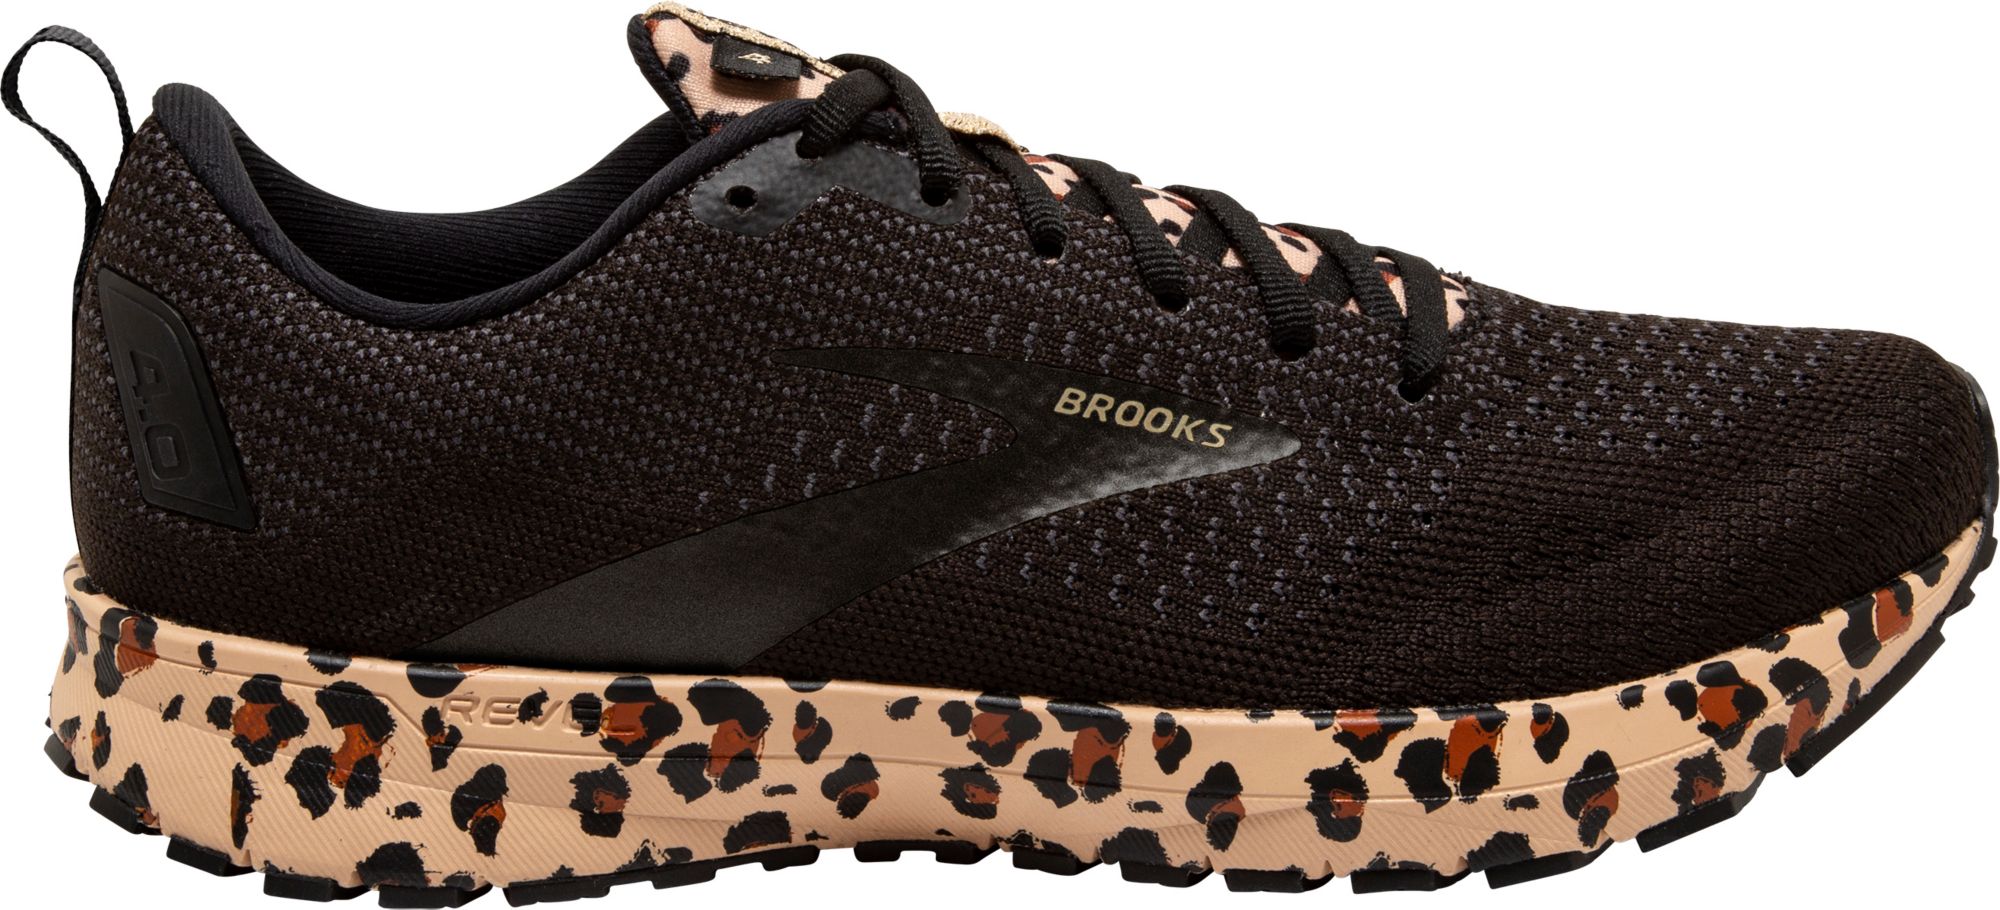 brooks shoes deals